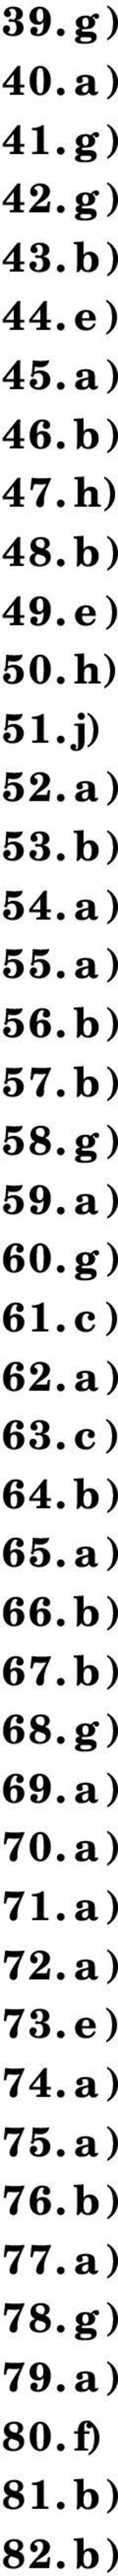 g) 61. c) 62. a) 63. c) 64. b) 65. a) 66. b) 67. b) 68. g) 69. a) 70. a) 71.